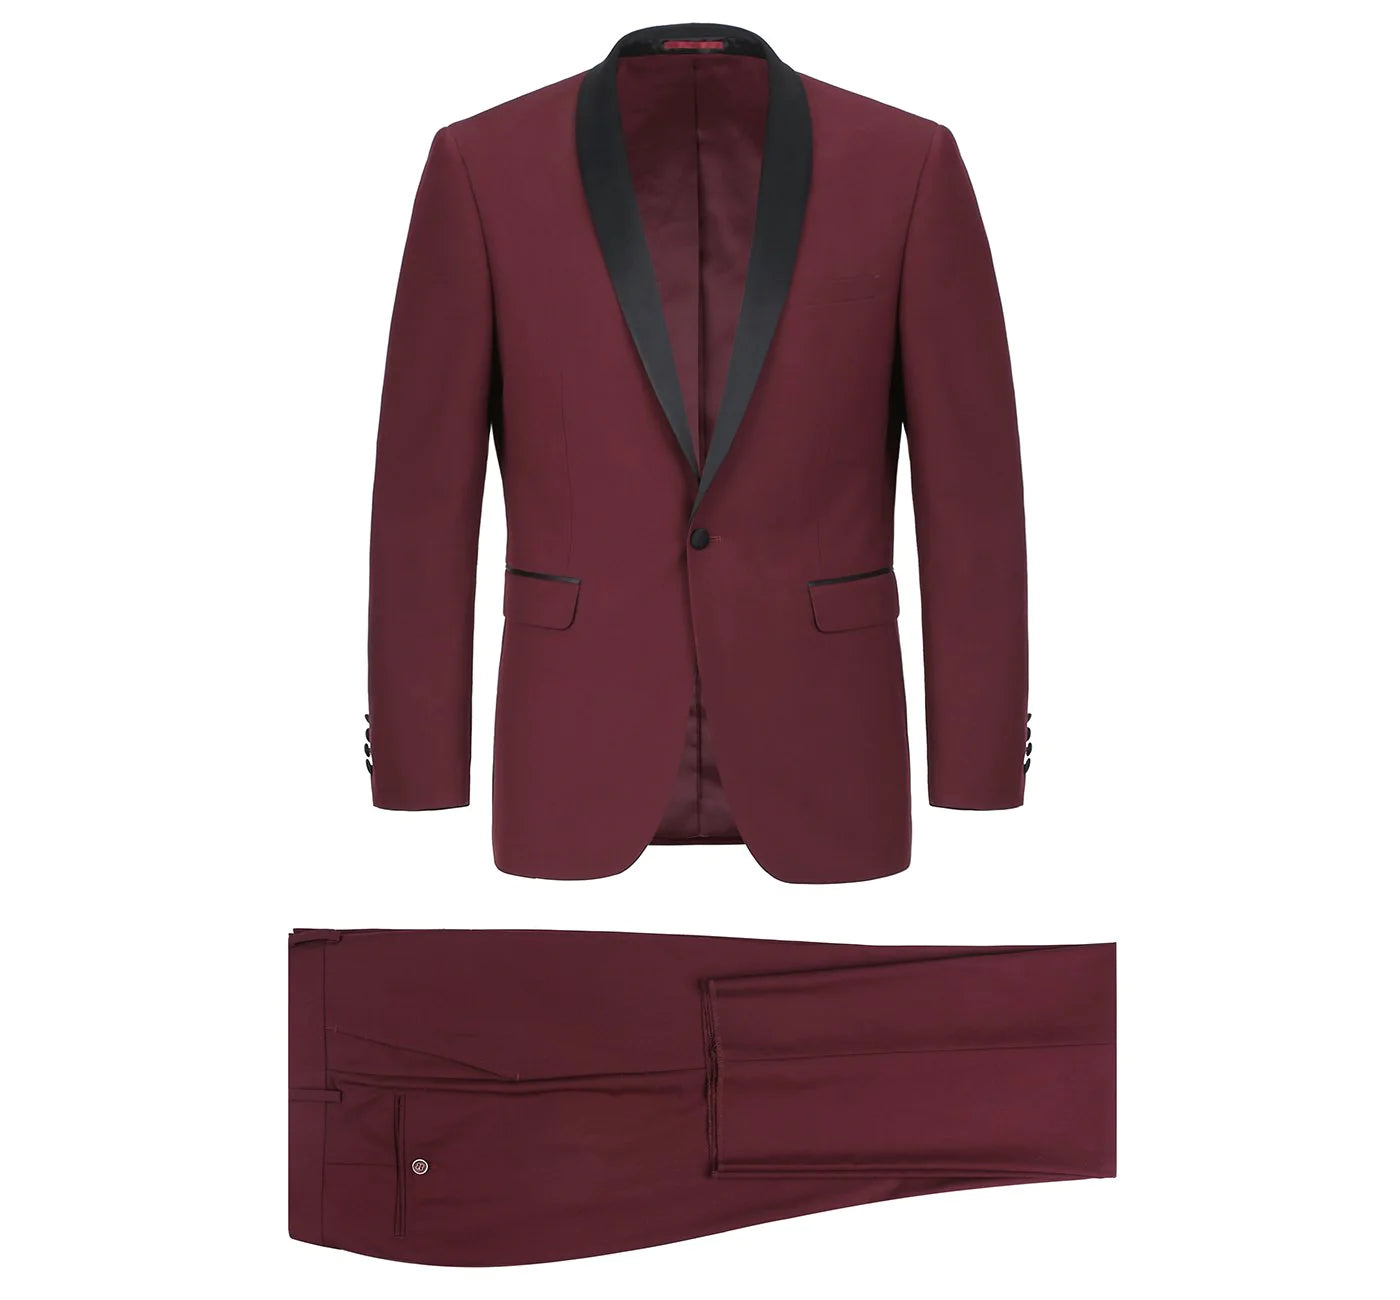 Men's Slim Fit 2-Piece Burgendy Shawl Lapel Tuxedo Suit